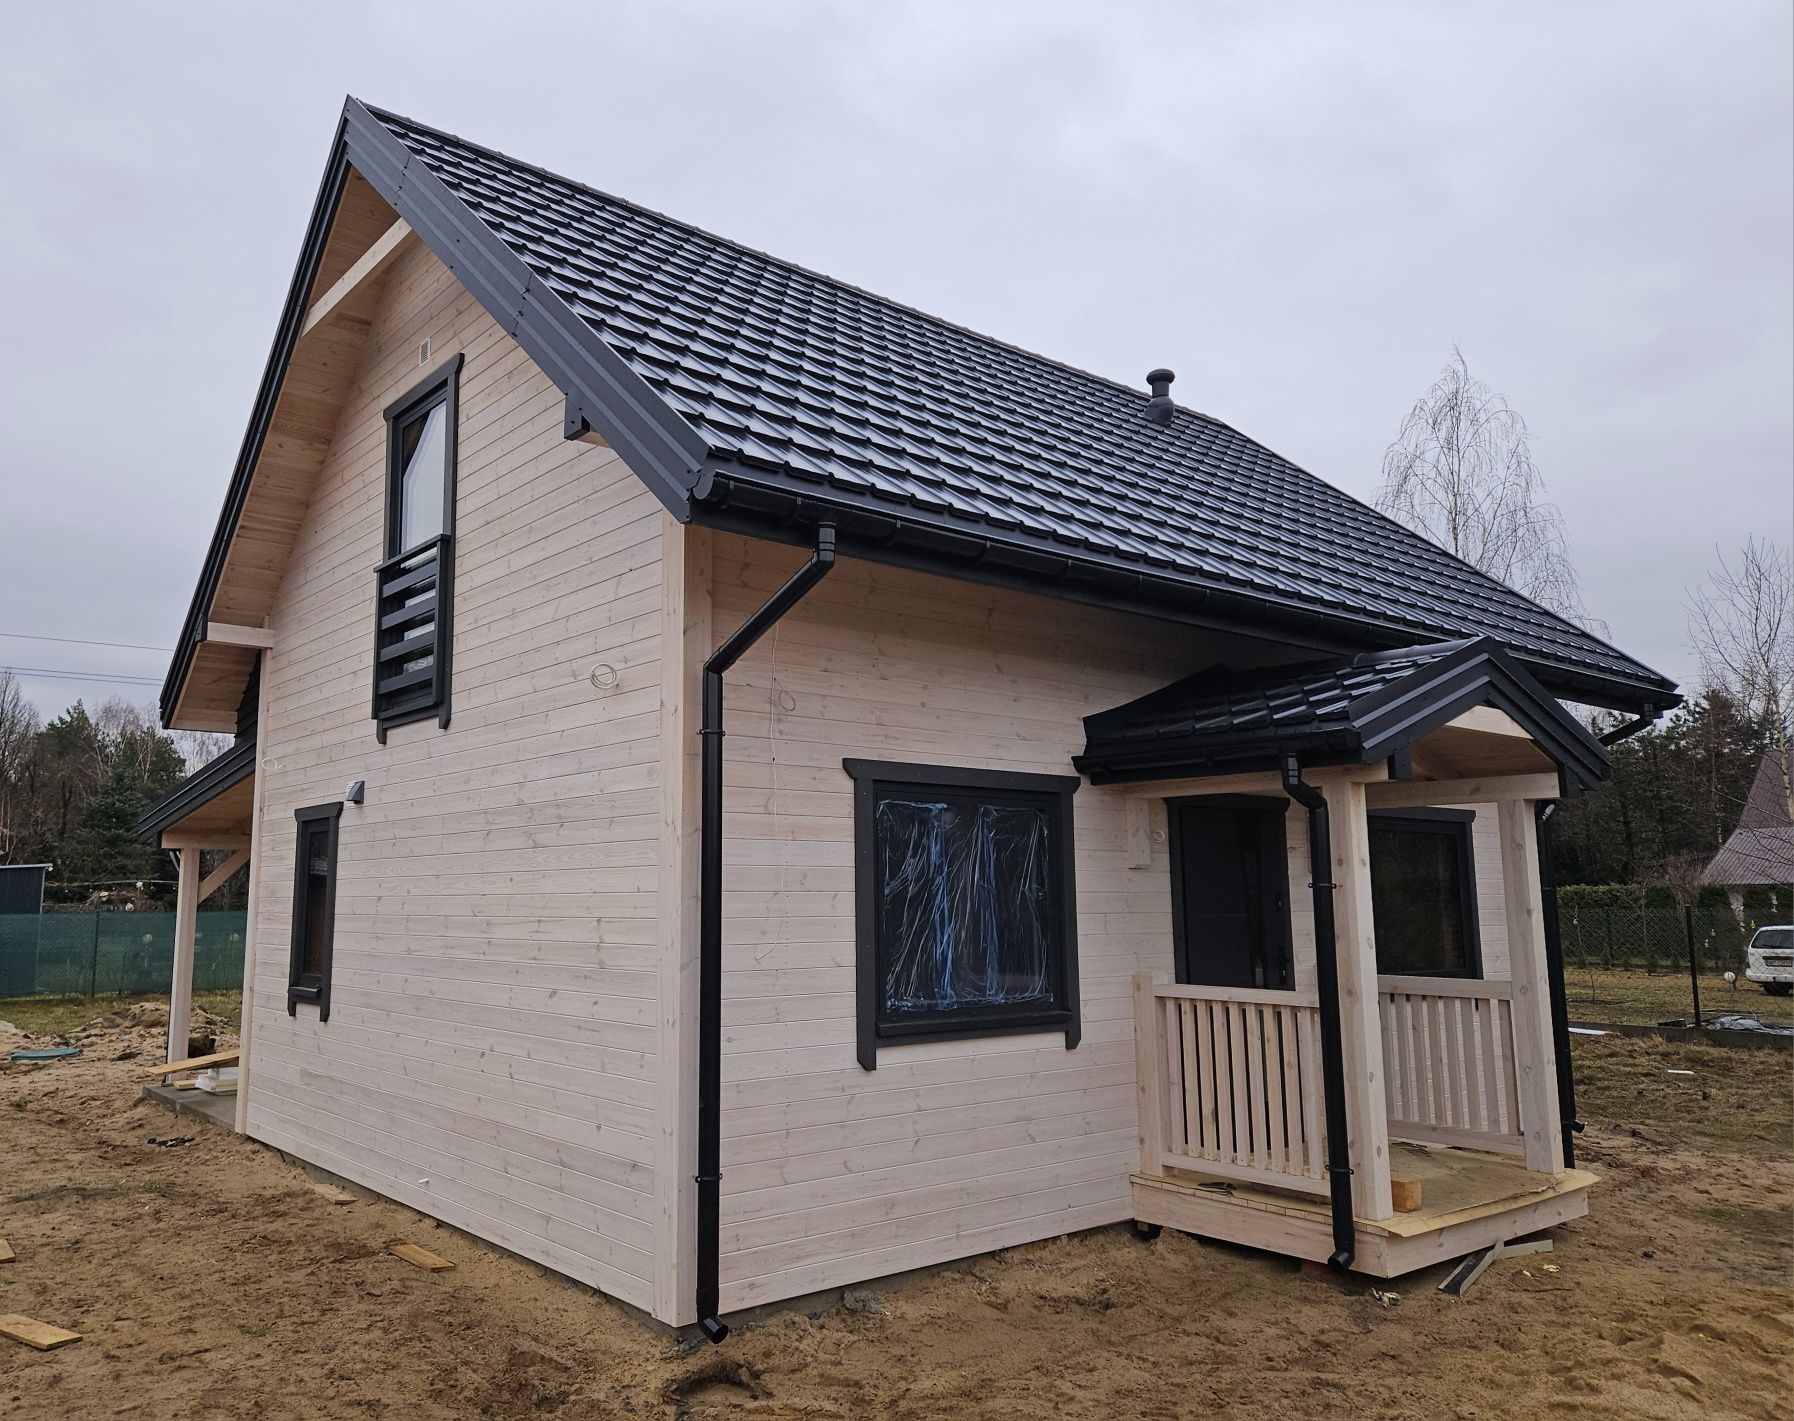 Dom domek drewniany 35m2 35 m2 70  budowa pergola altana garaż wiata